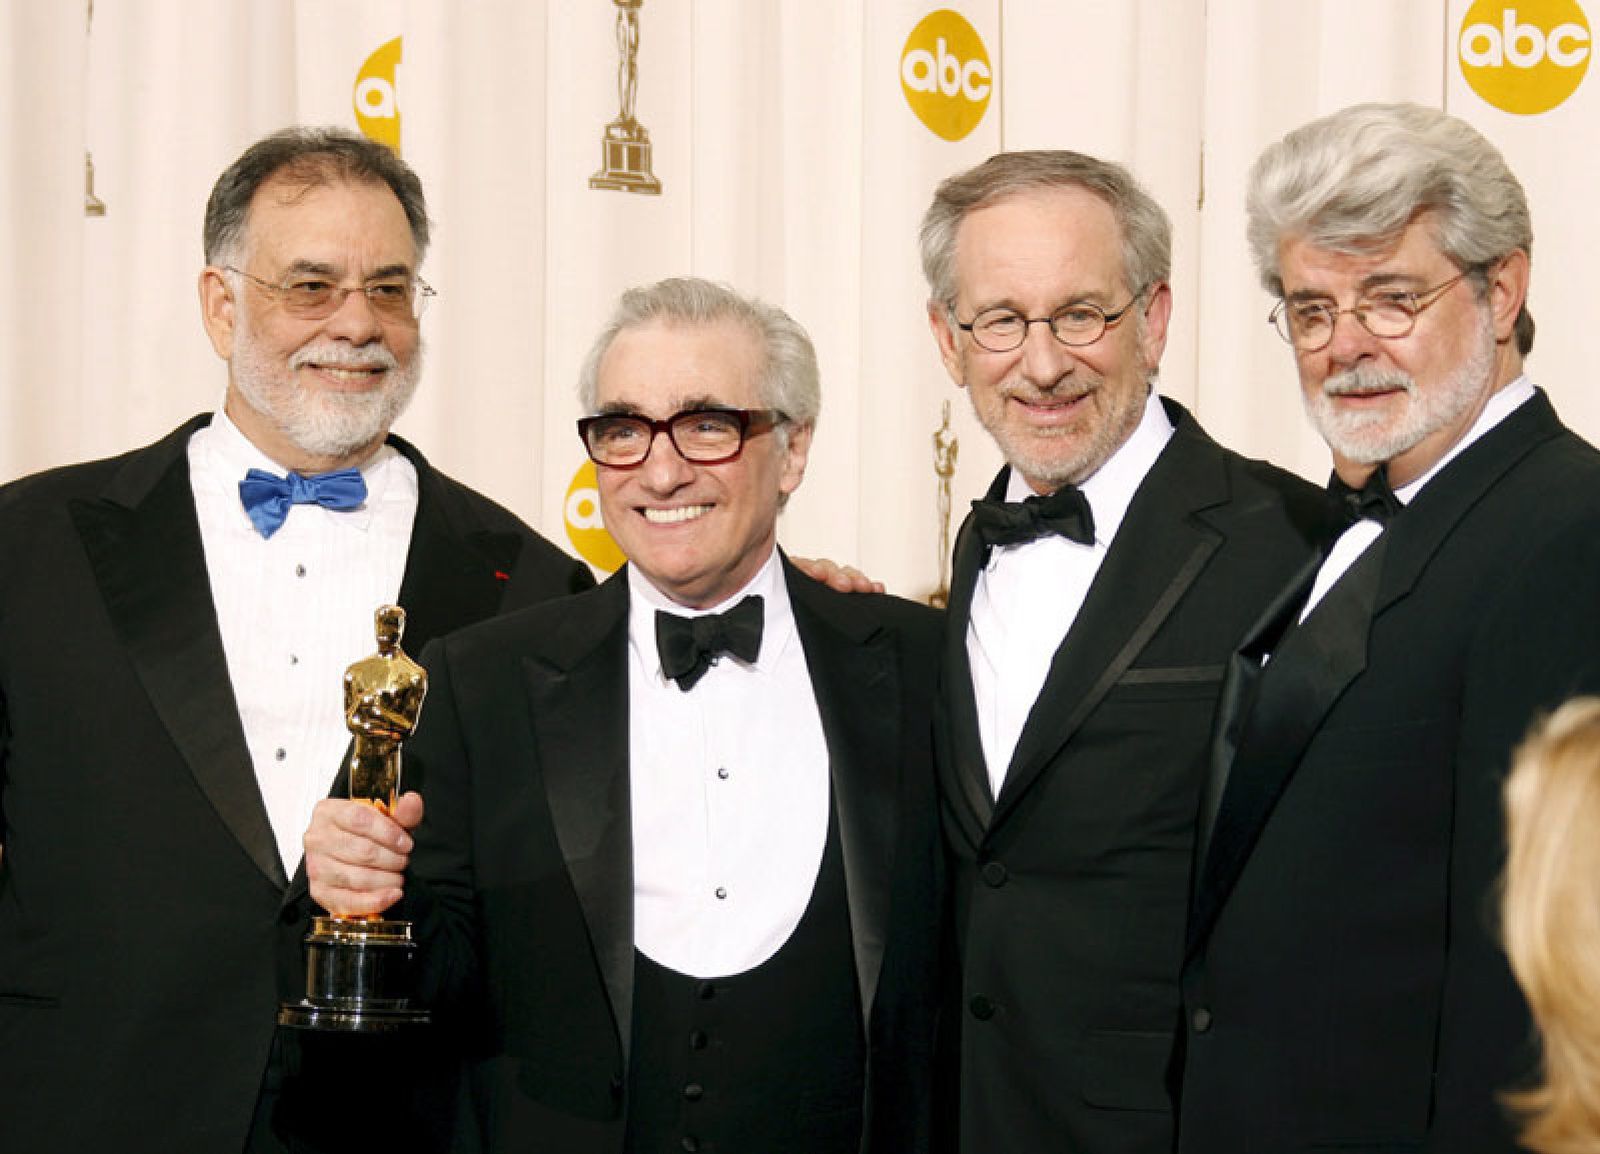 Foto: Martin Scorsese y su película 'Infiltrados' ganadores en una noche muy repartida